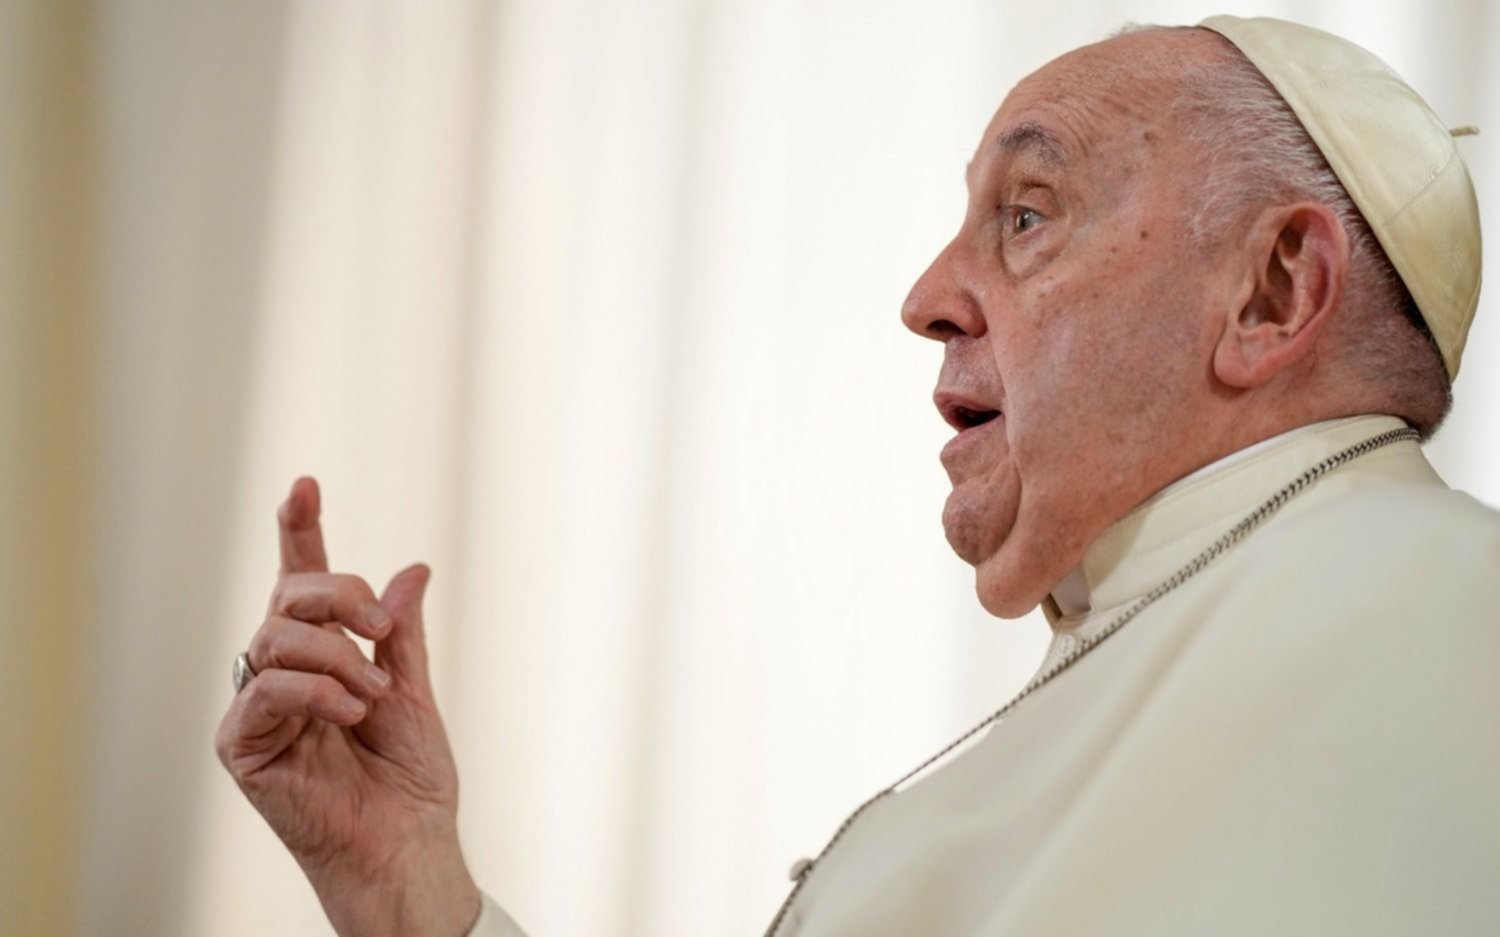 "La homosexualidad no es delito", dijo el papa Francisco, que también habló de su salud y su futuro